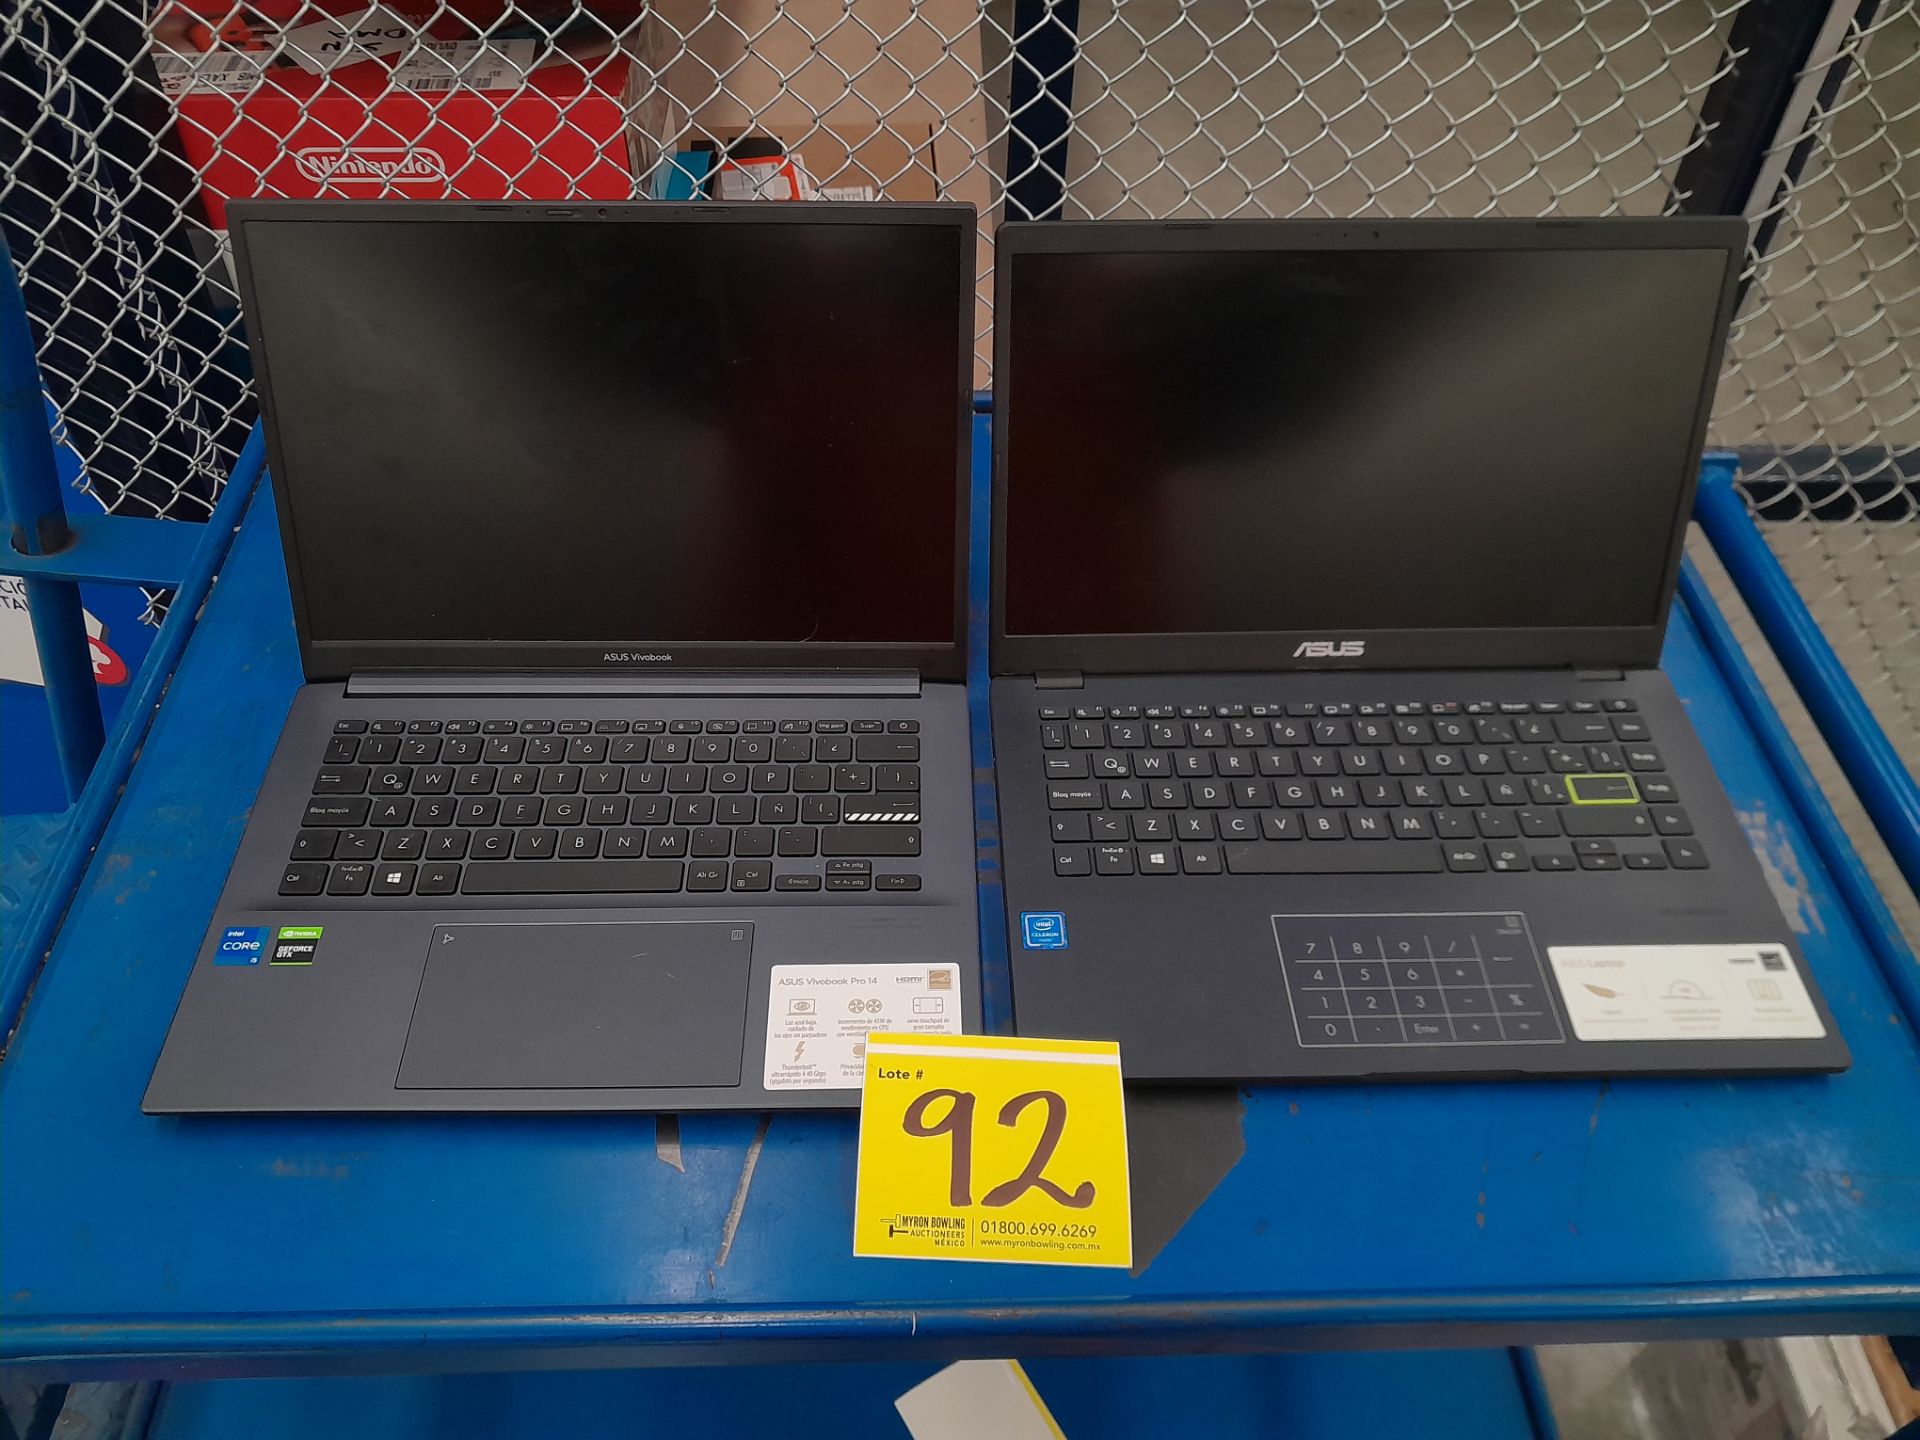 Lote de 2 laptops contiene: 1 Laptop Marca ASUS, Modelo R429M, Serie 192032, Color GRIS, Procesador